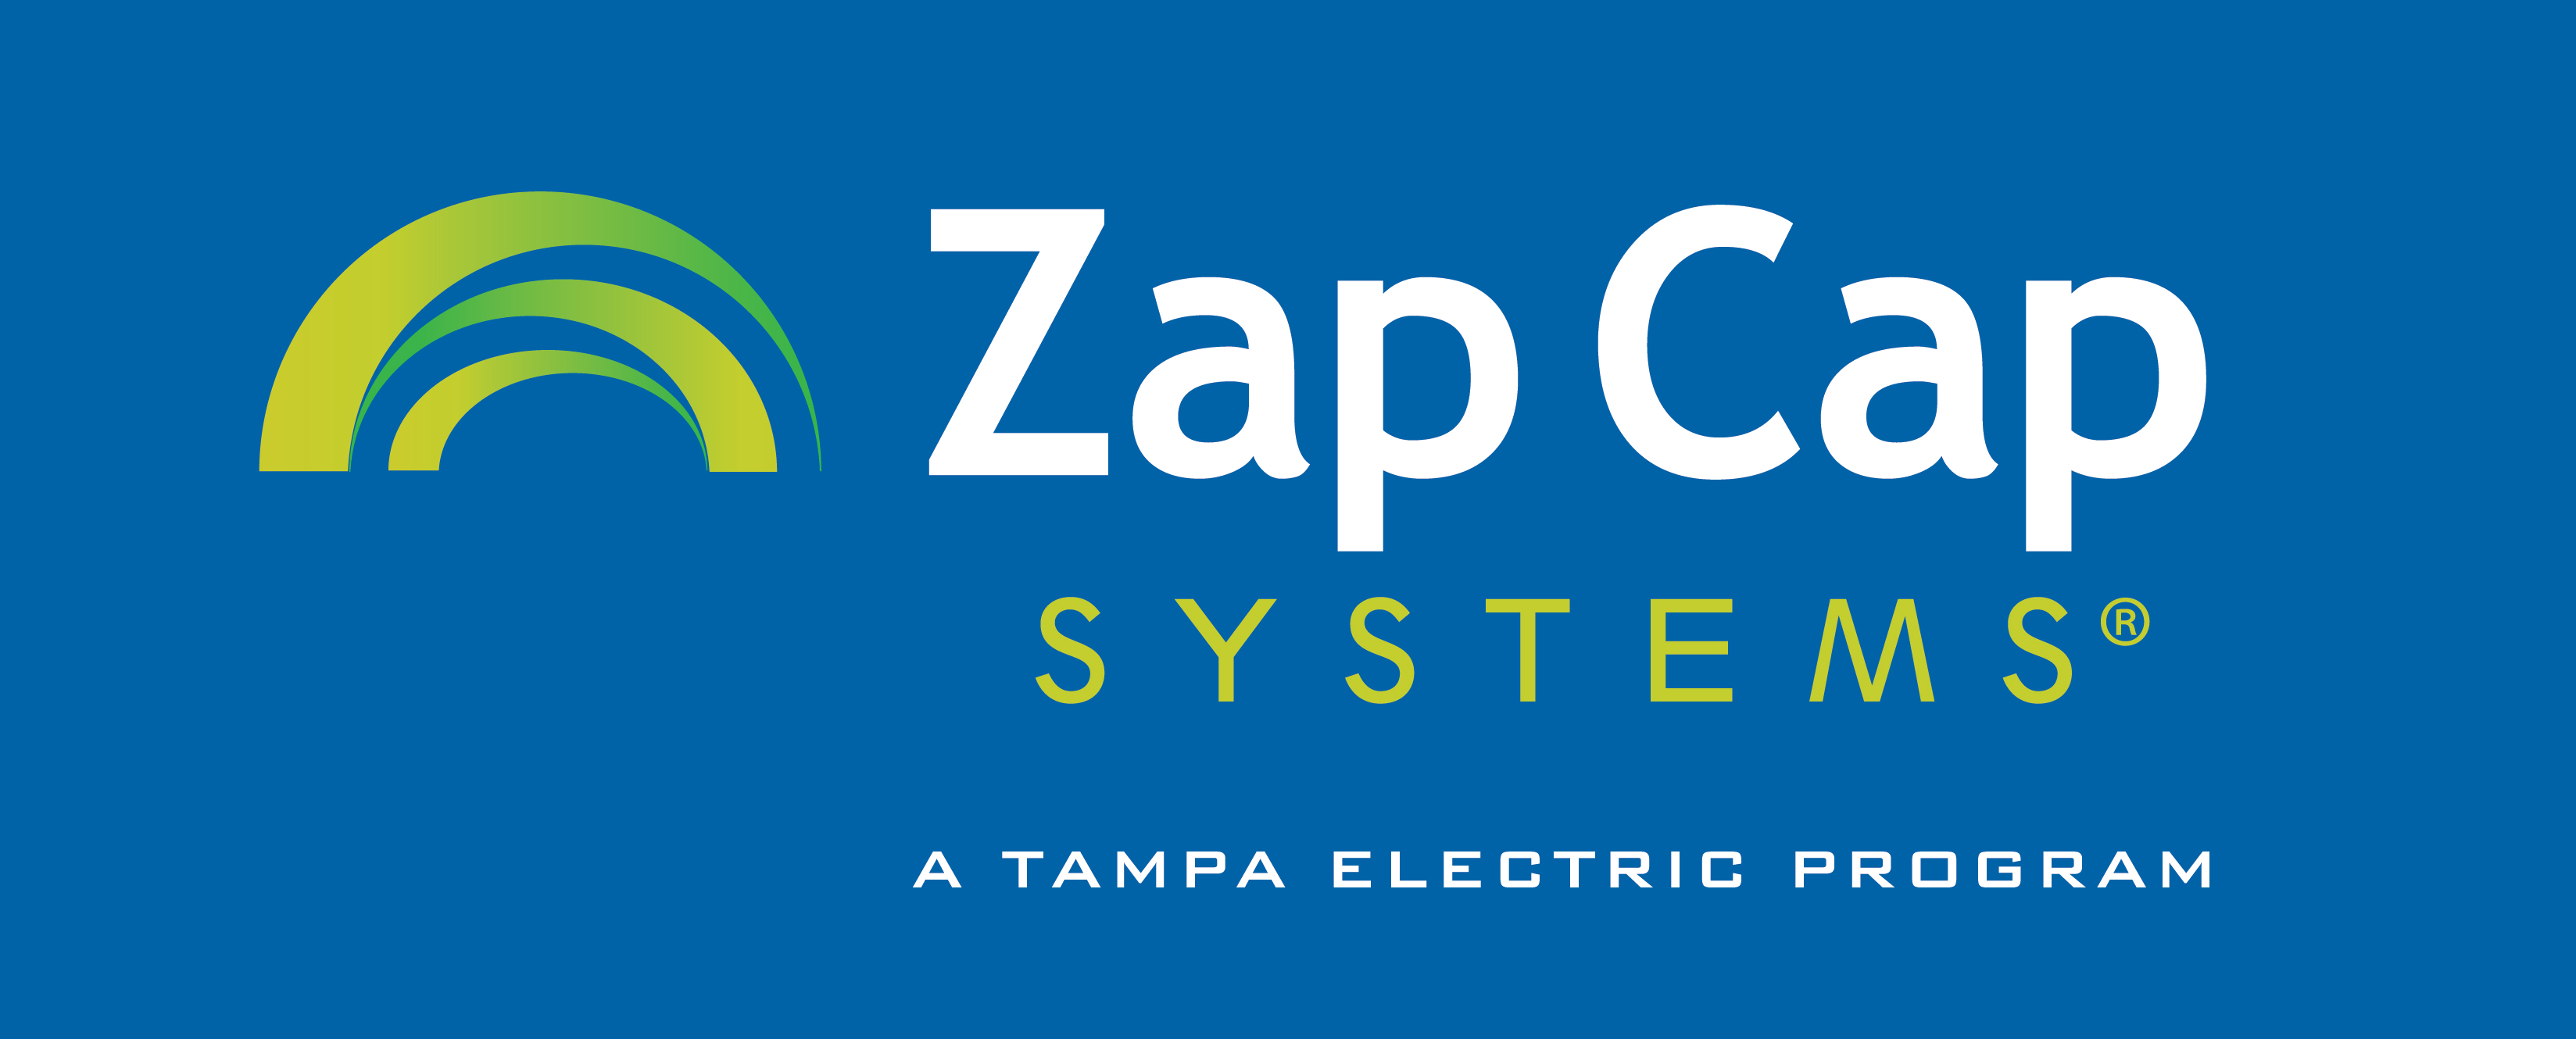 Tampa Electric Awards Zap Cap Media Buy to Brandmark Advertising